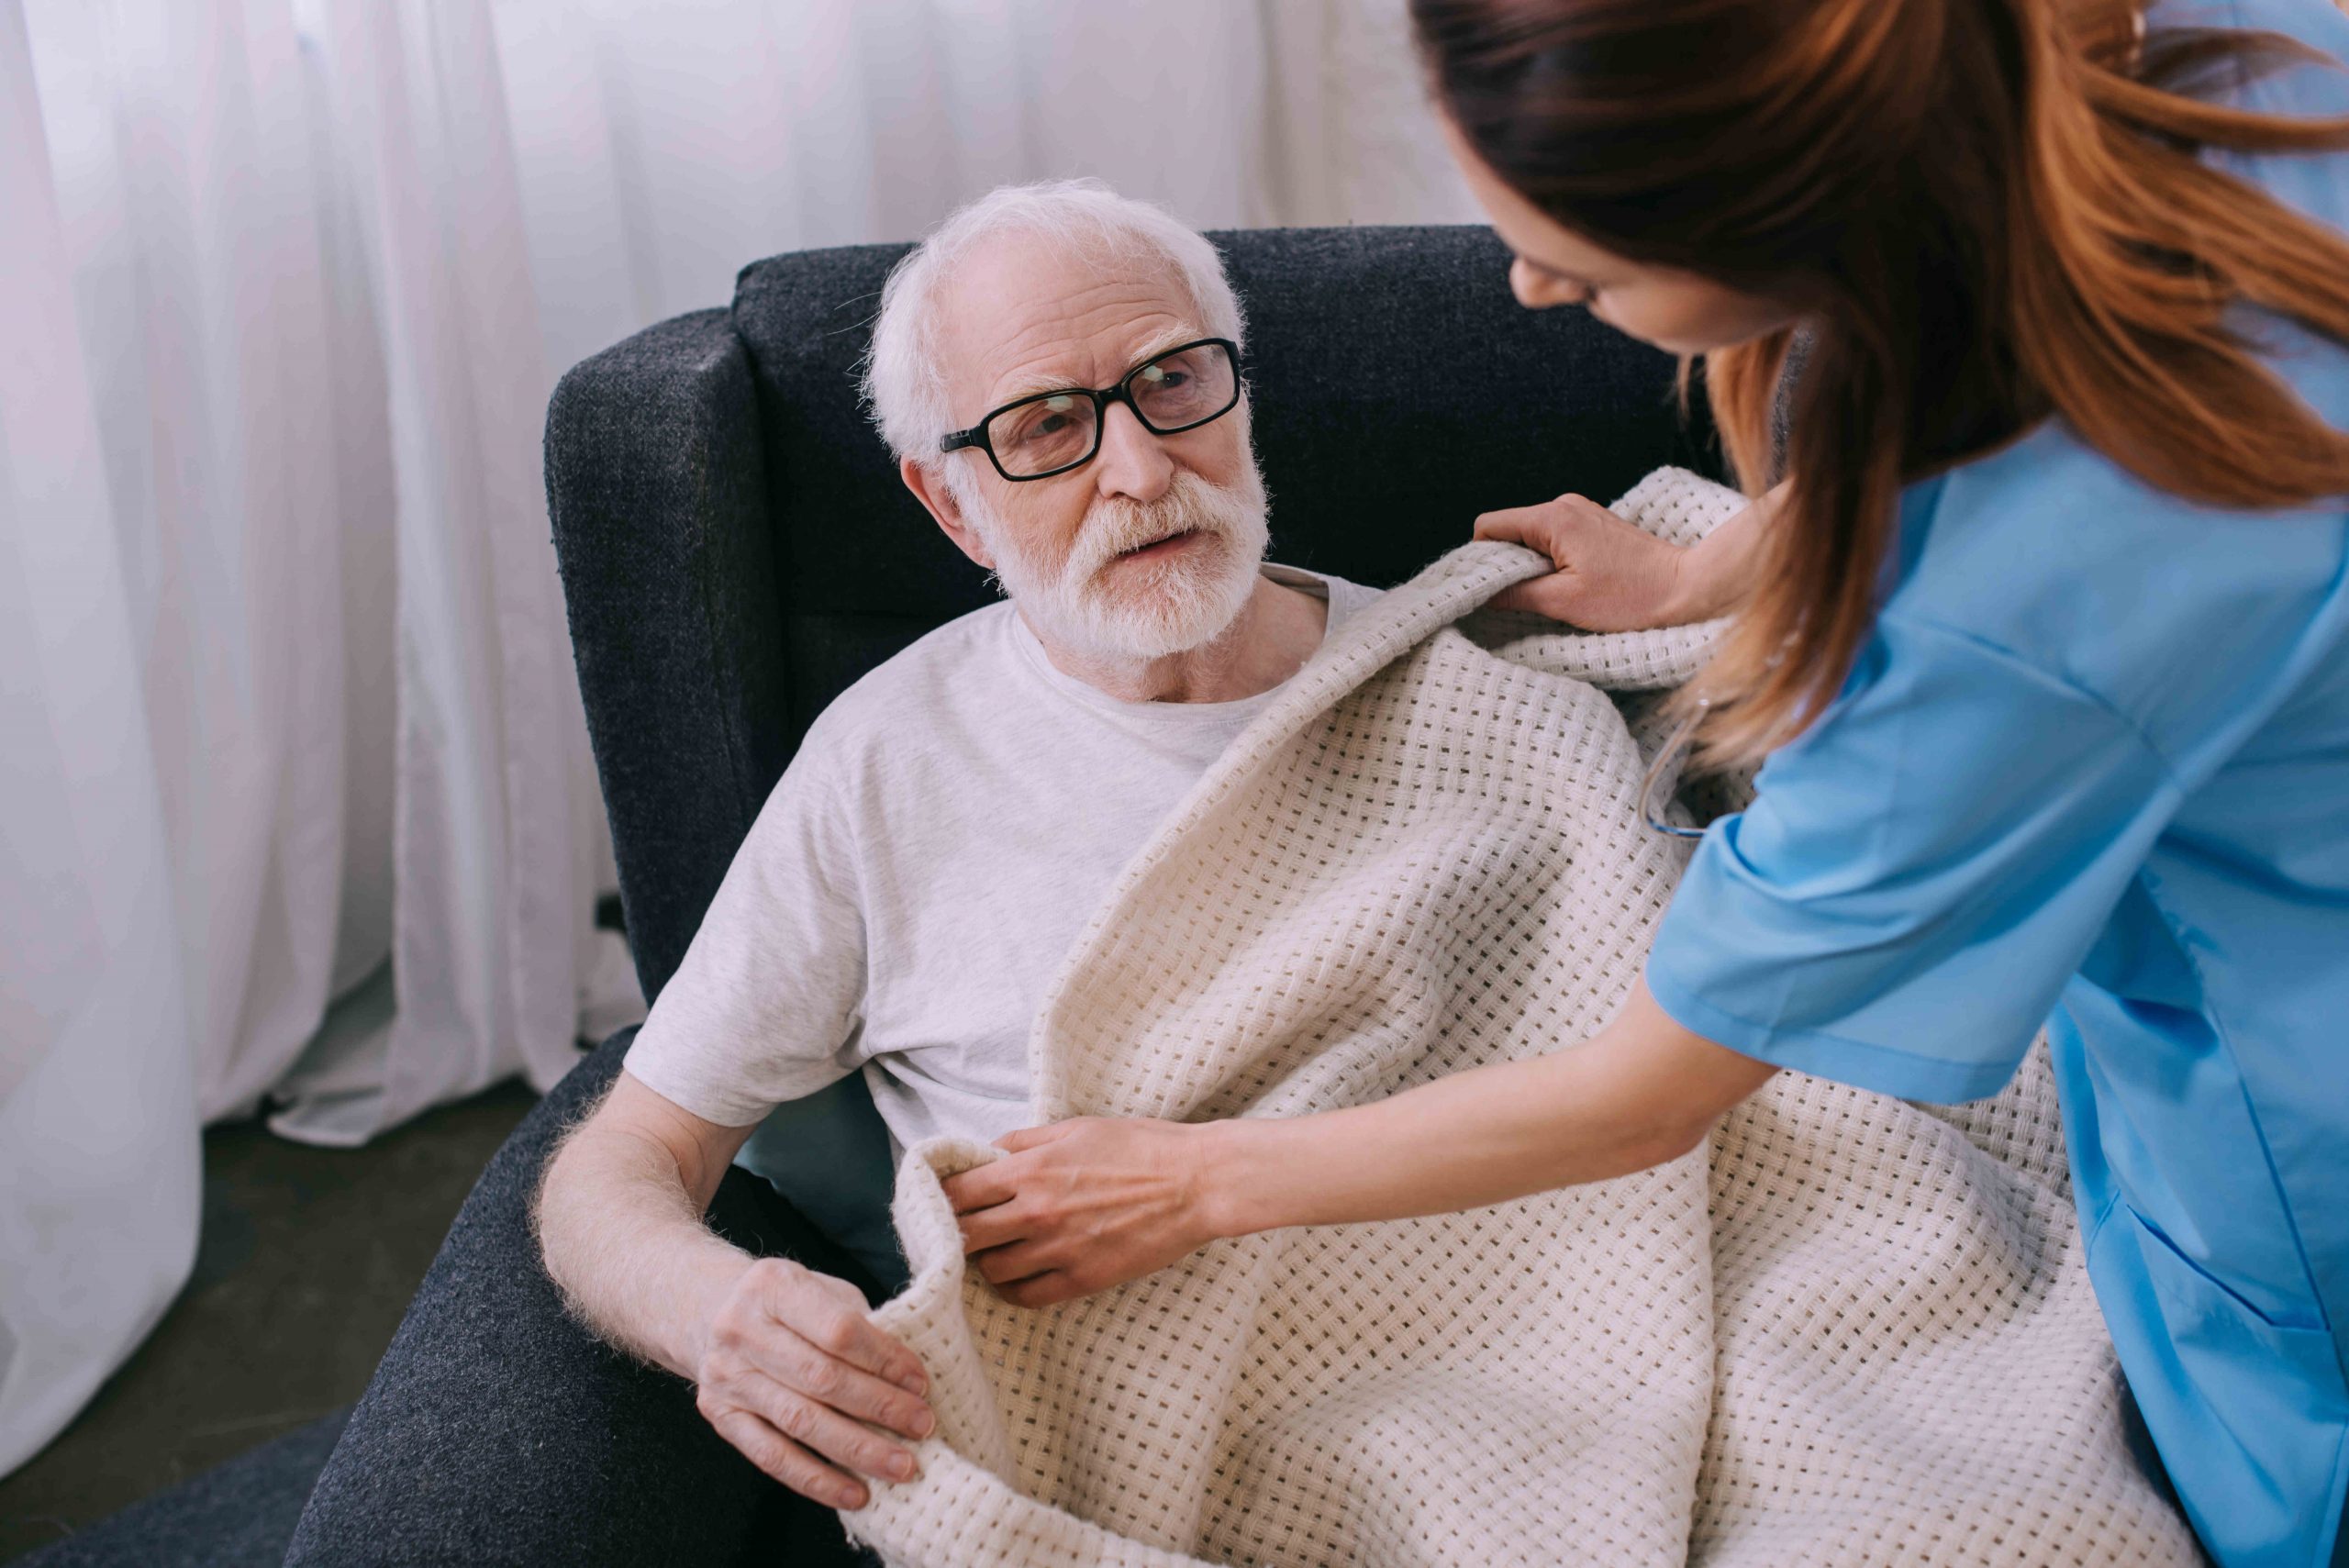 caregiver-covering-senior-patien